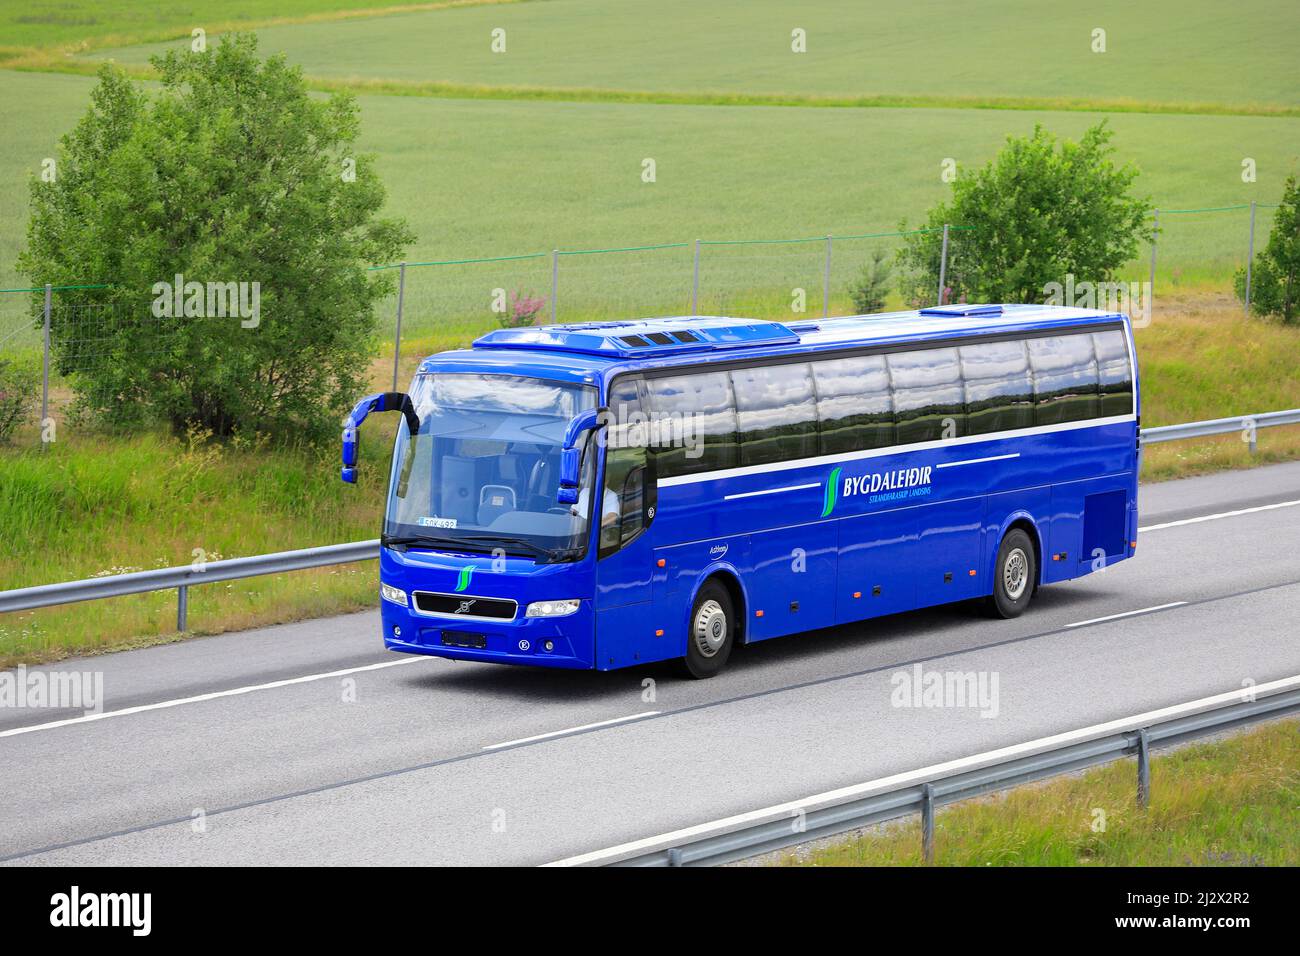 Blu brillante autobus Volvo Bygdaleidir, targhe Finlandia, sulla strada nazionale finlandese 1, E18, nel sud della Finlandia. Salo, Finlandia. Luglio 10, 2020. Foto Stock